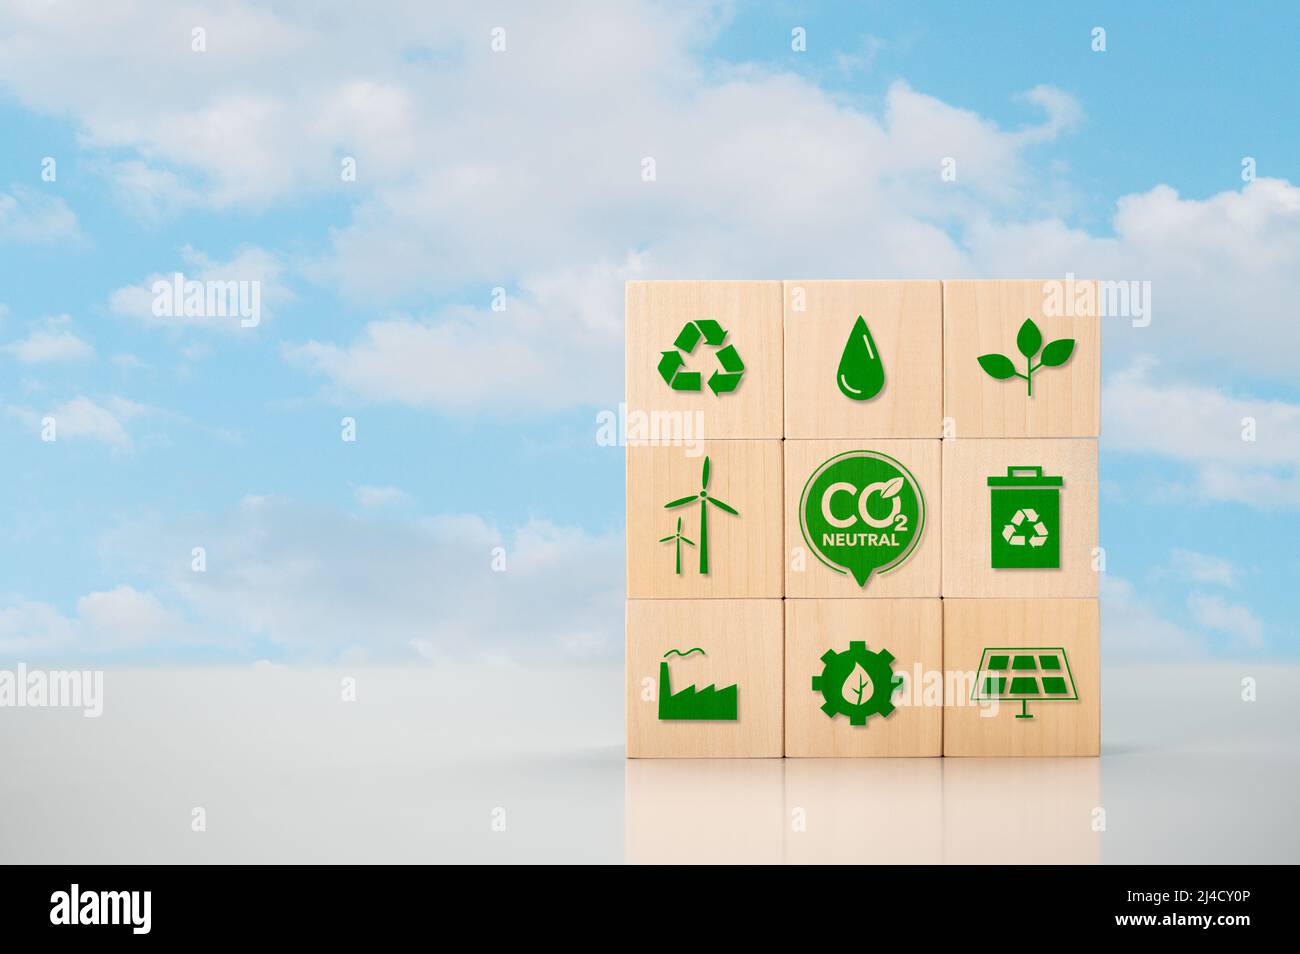 CO2 impegno neutrale nel mondo degli affari, della finanza e dell'industria per ridurre le emissioni di anidride carbonica e limitare il riscaldamento globale e il cambiamento climatico. cubi di legno Foto Stock